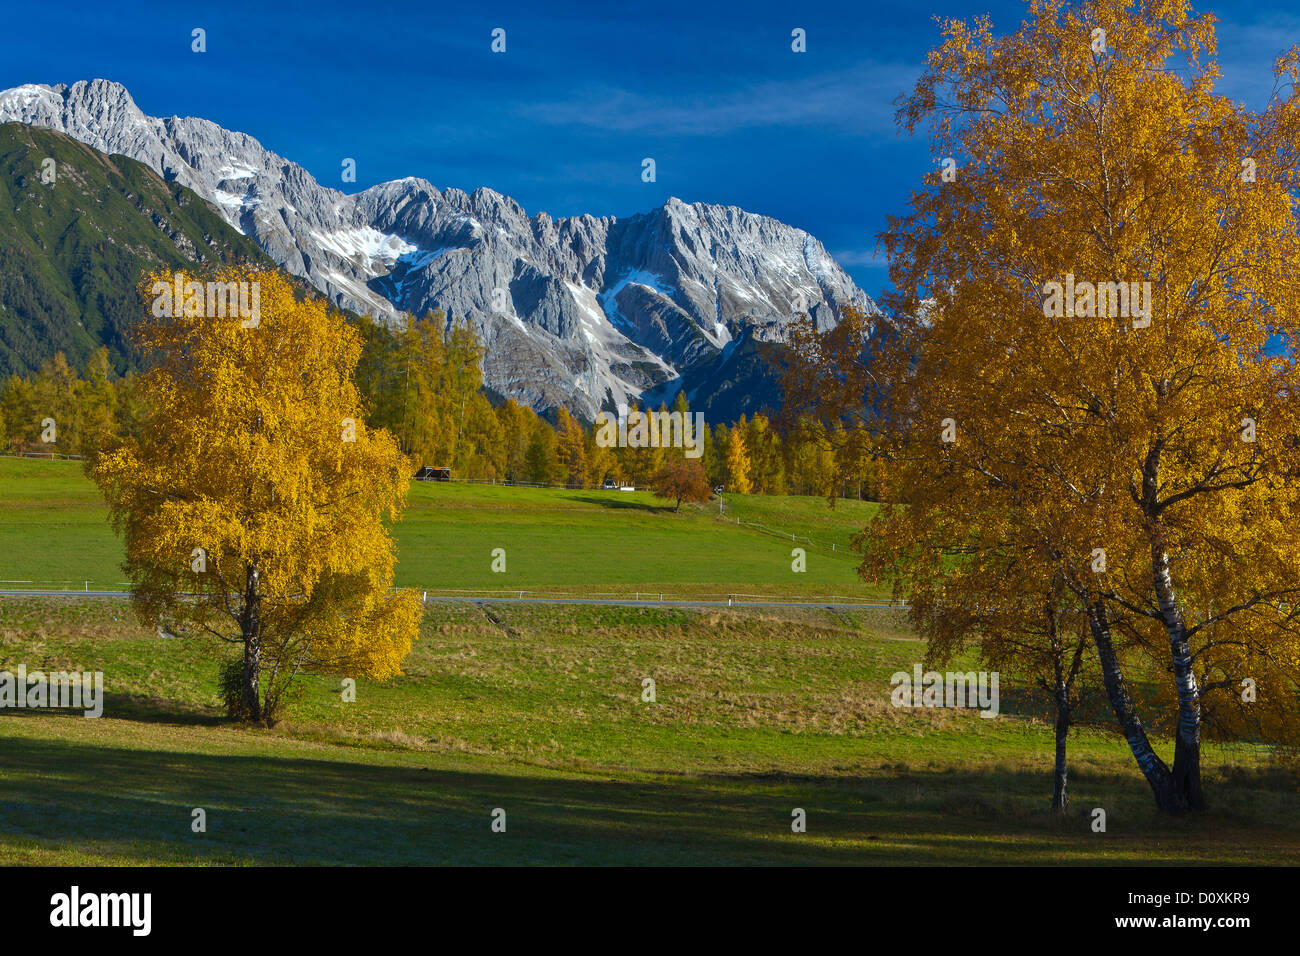 Austria, Europe, Tyrol, Tirol, Mieming, chain, plateau, Obsteig, autumn, birches, Yellow, blue, green, snow, meadow, mountains, Stock Photo